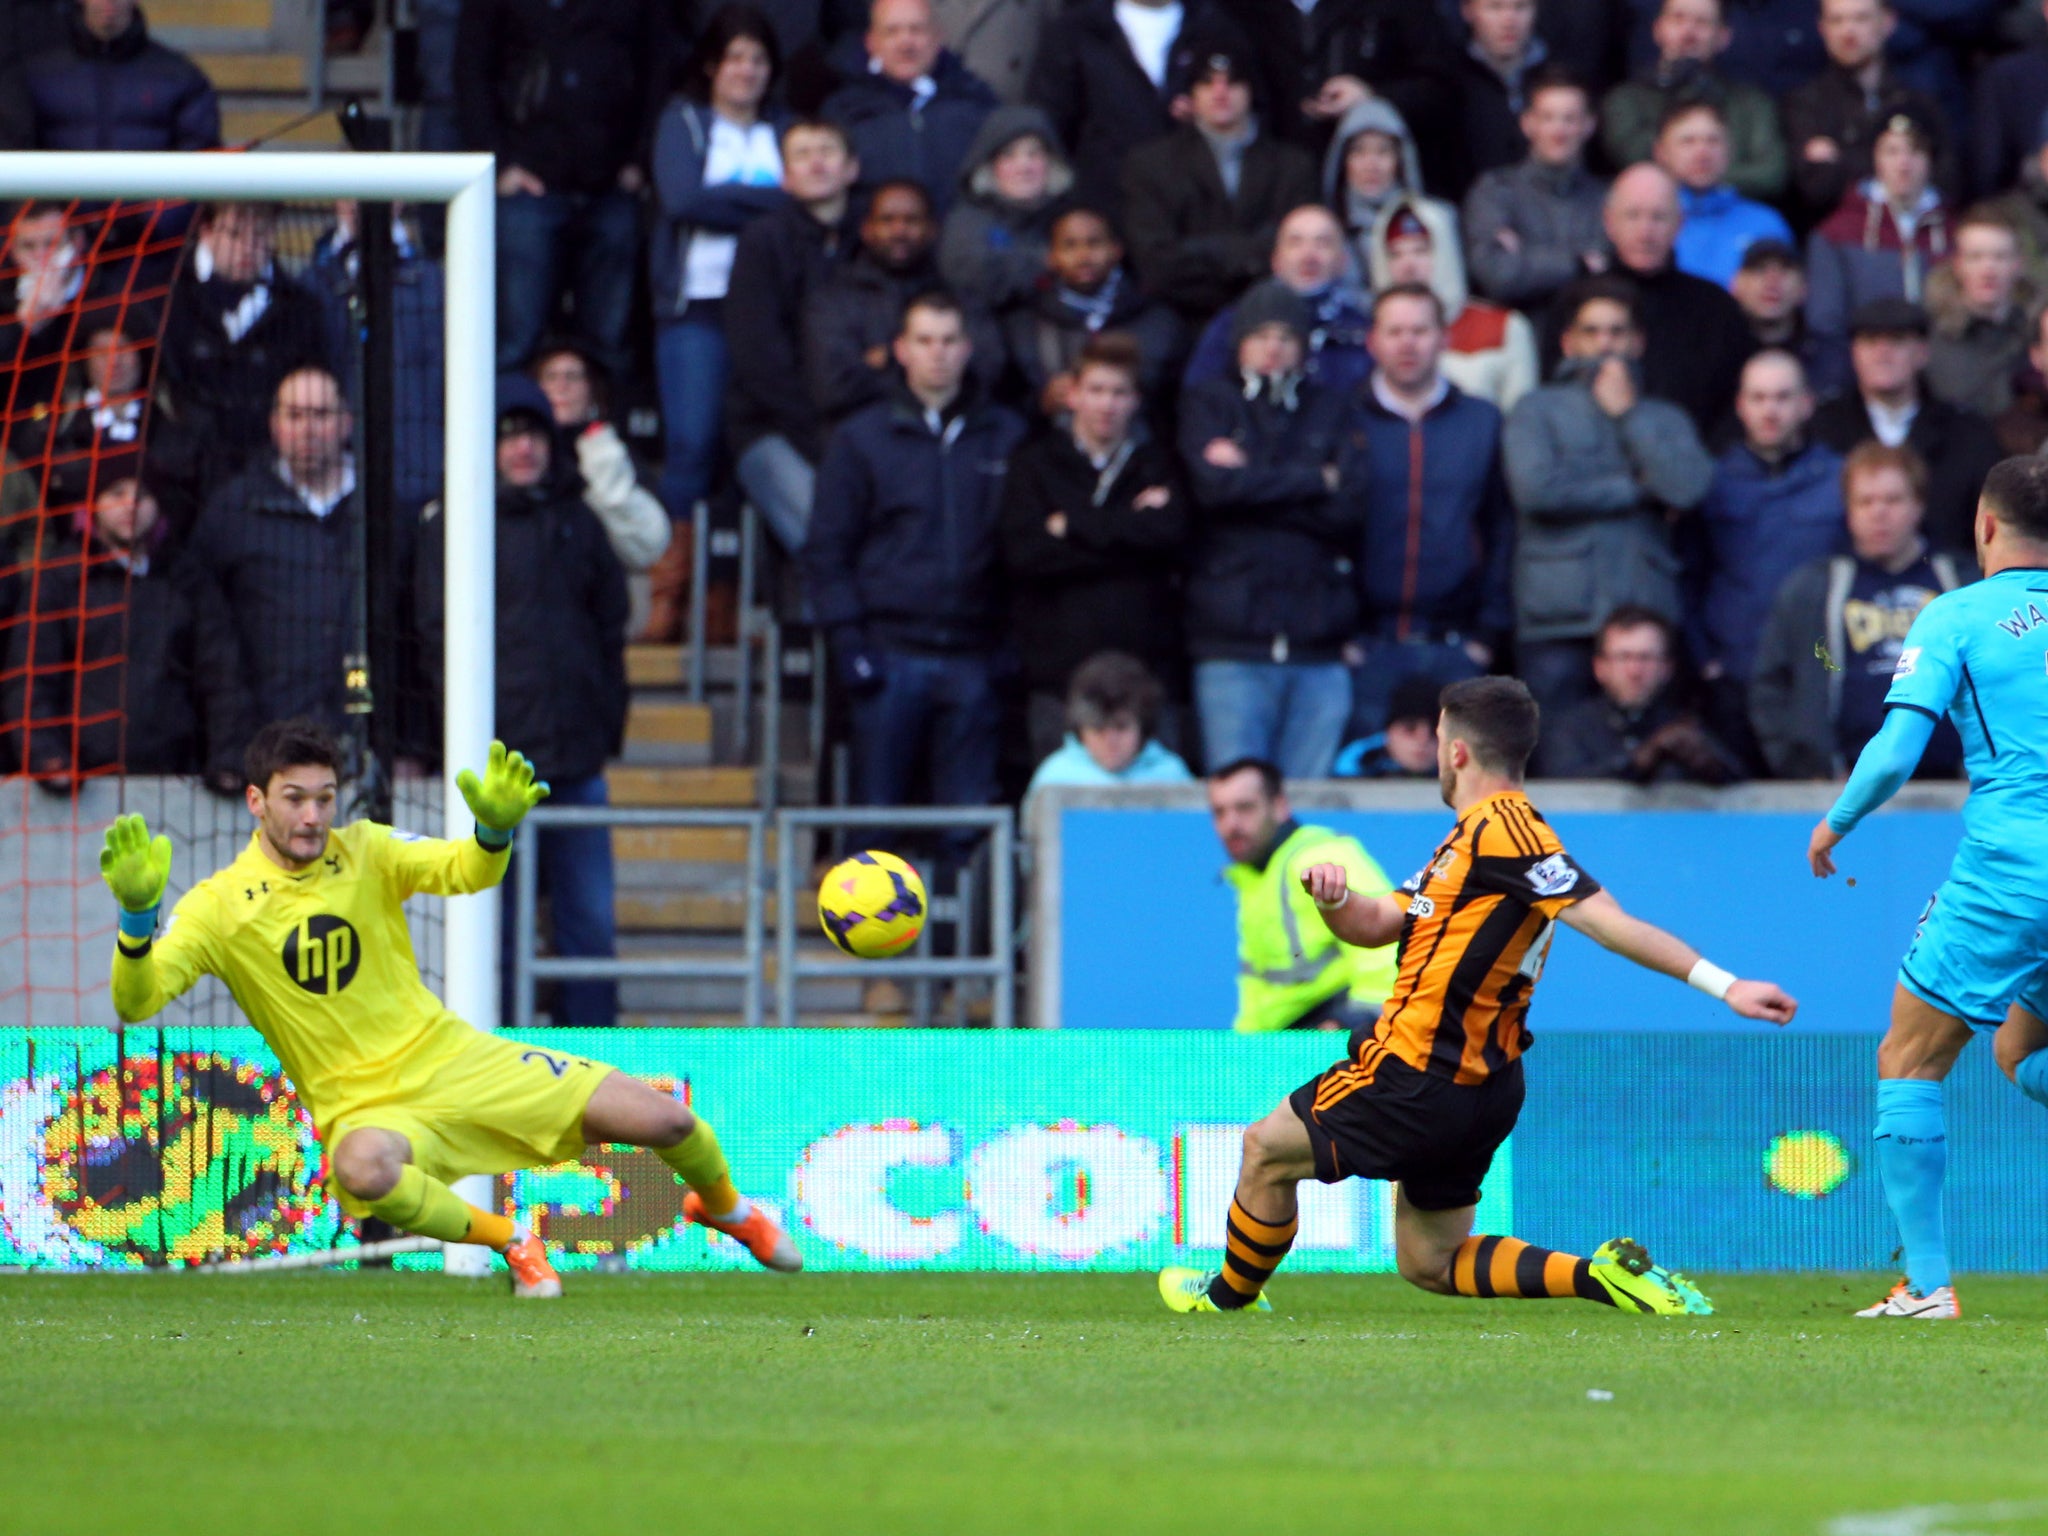 Shane Long scores for Hull against Tottenham